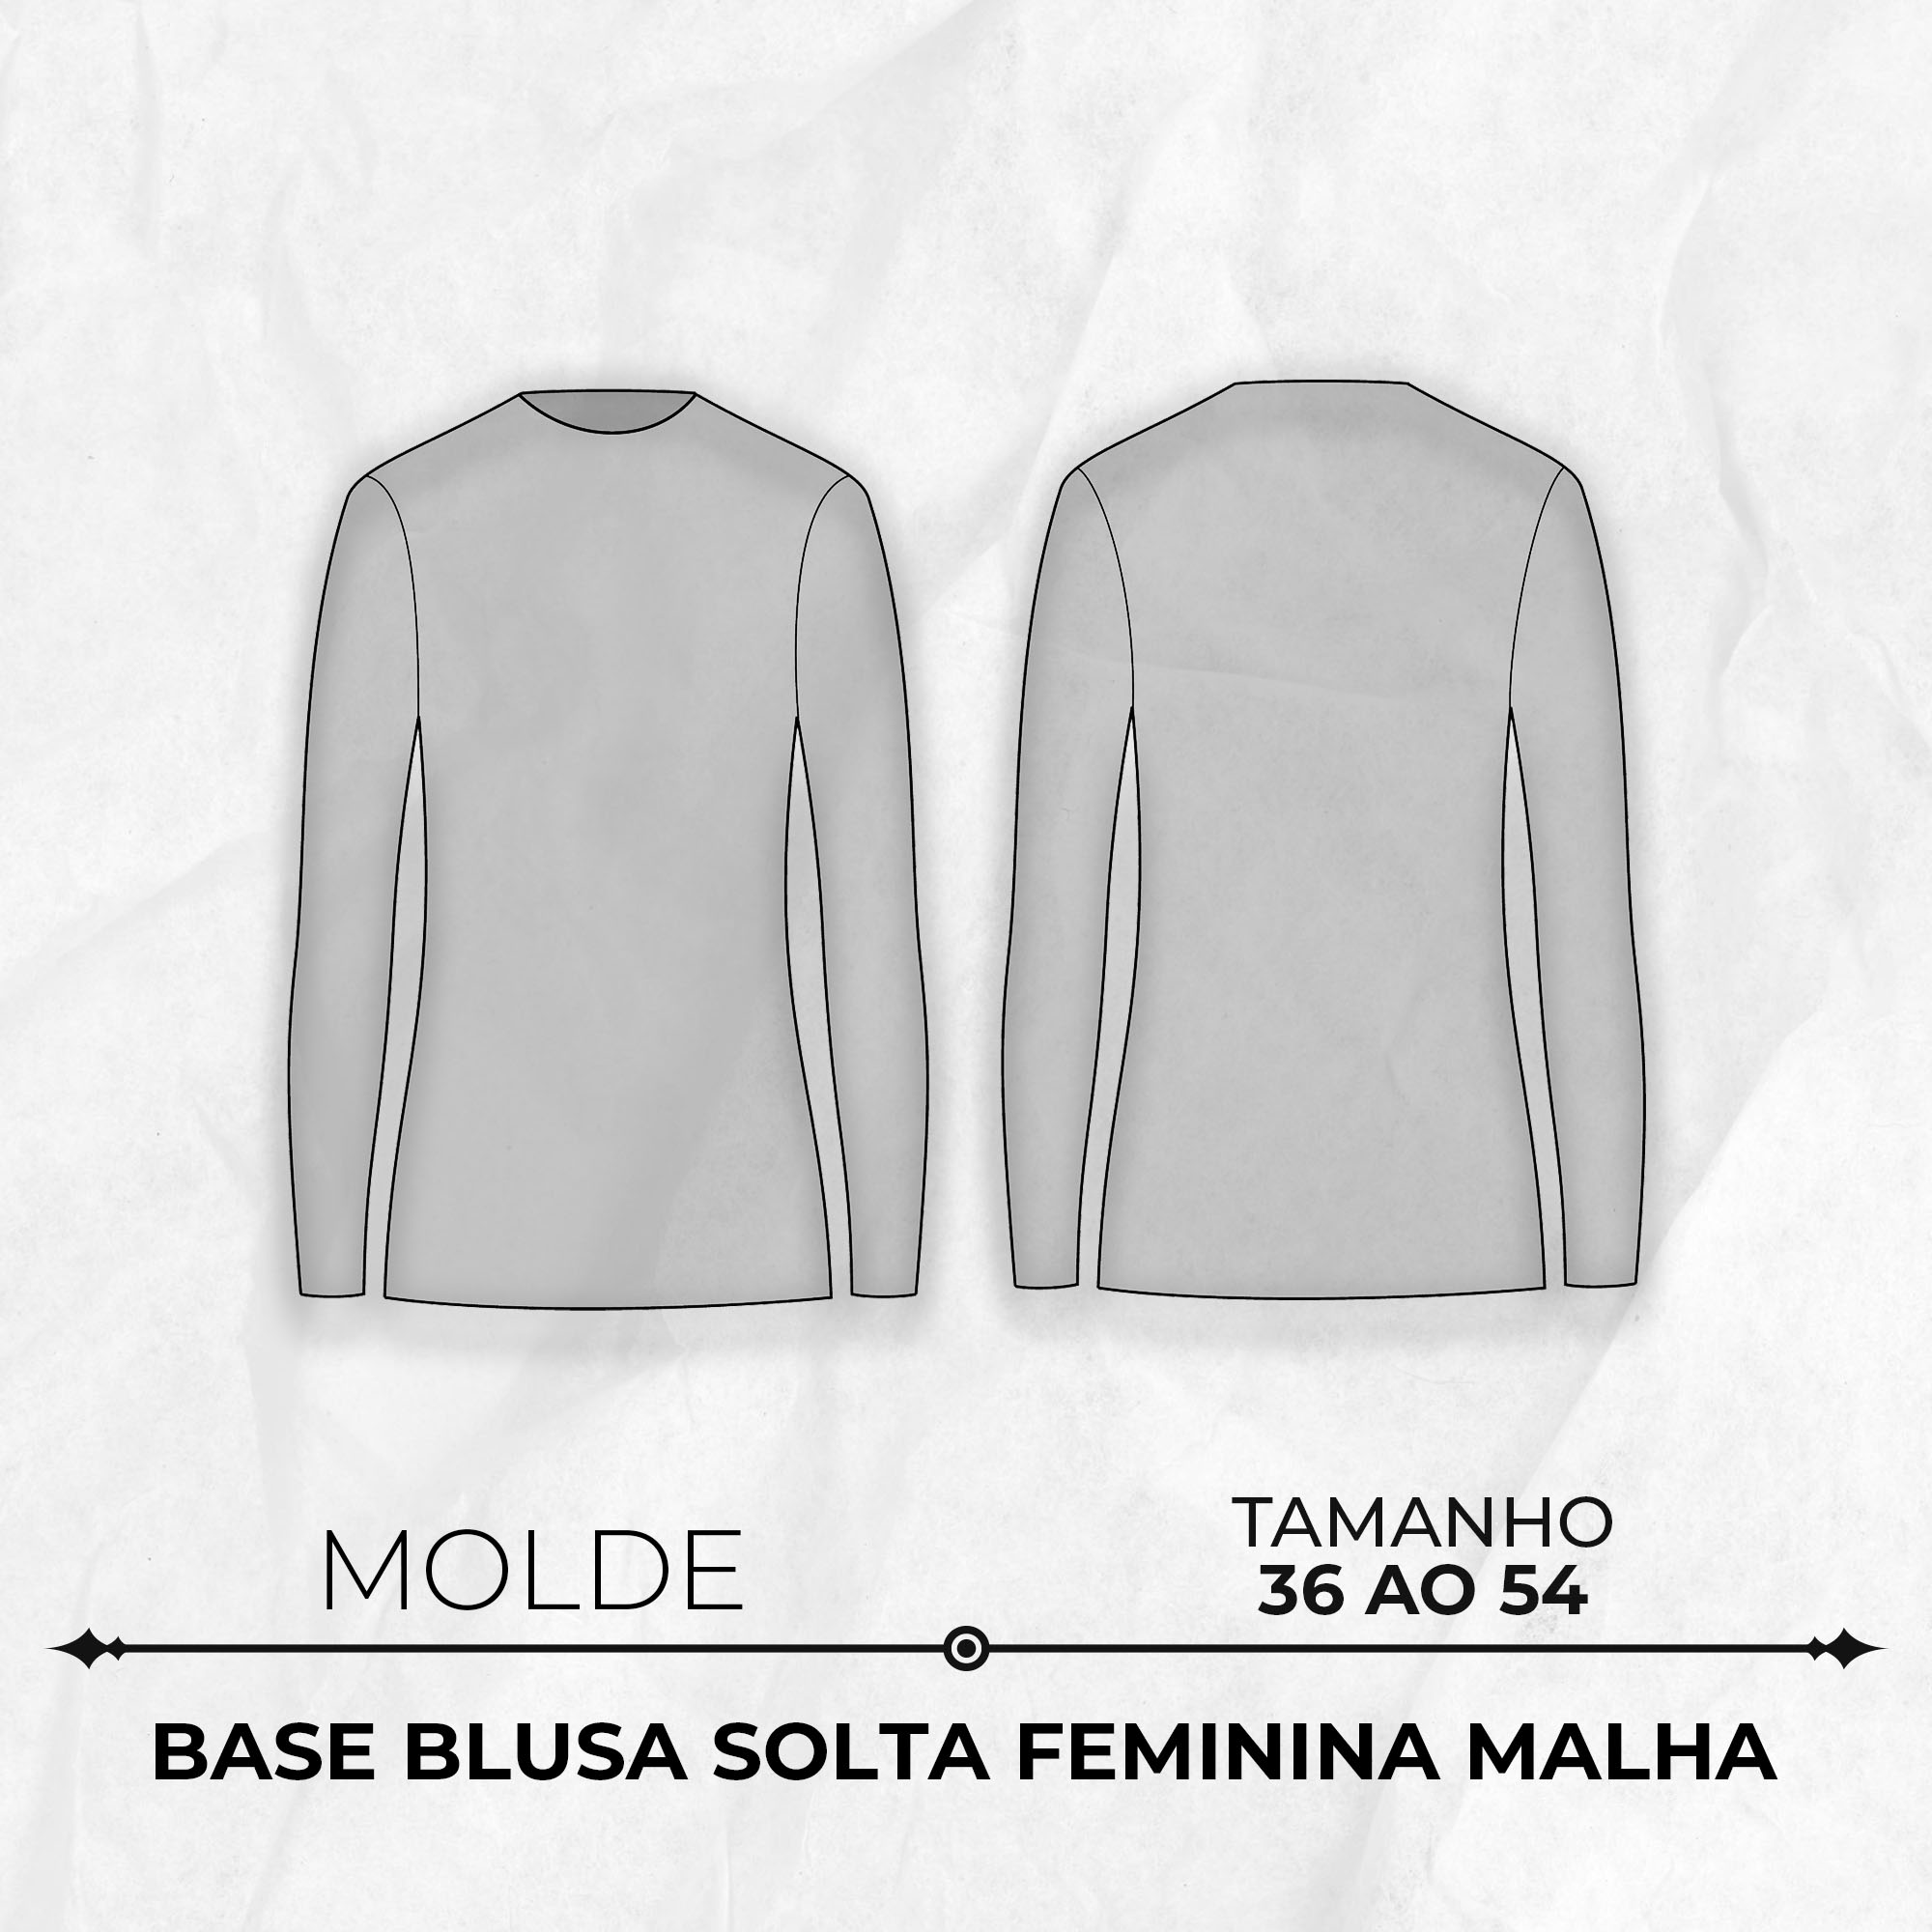 Molde base blusa solta feminina malha tamanho 36 ao 54 by Wania Machado